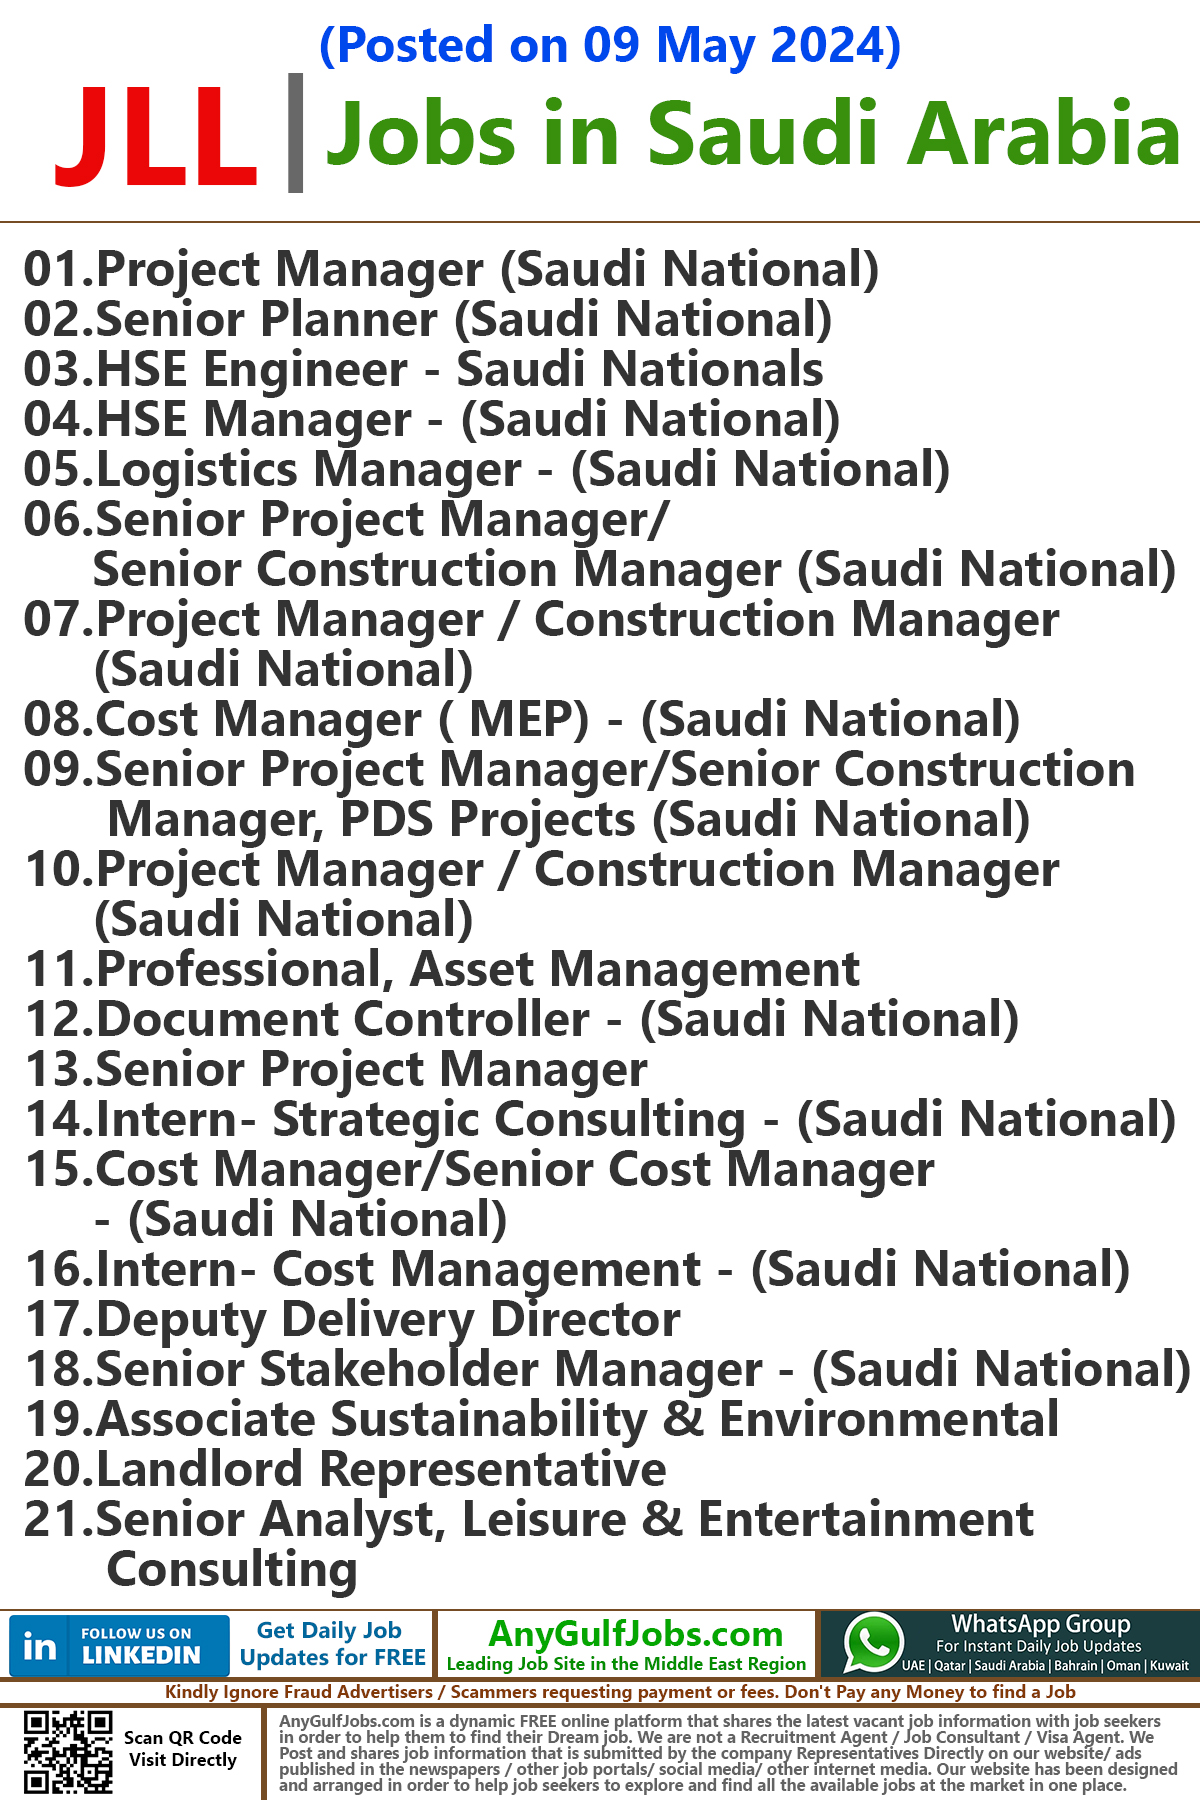 JLL Jobs in Saudi Arabia